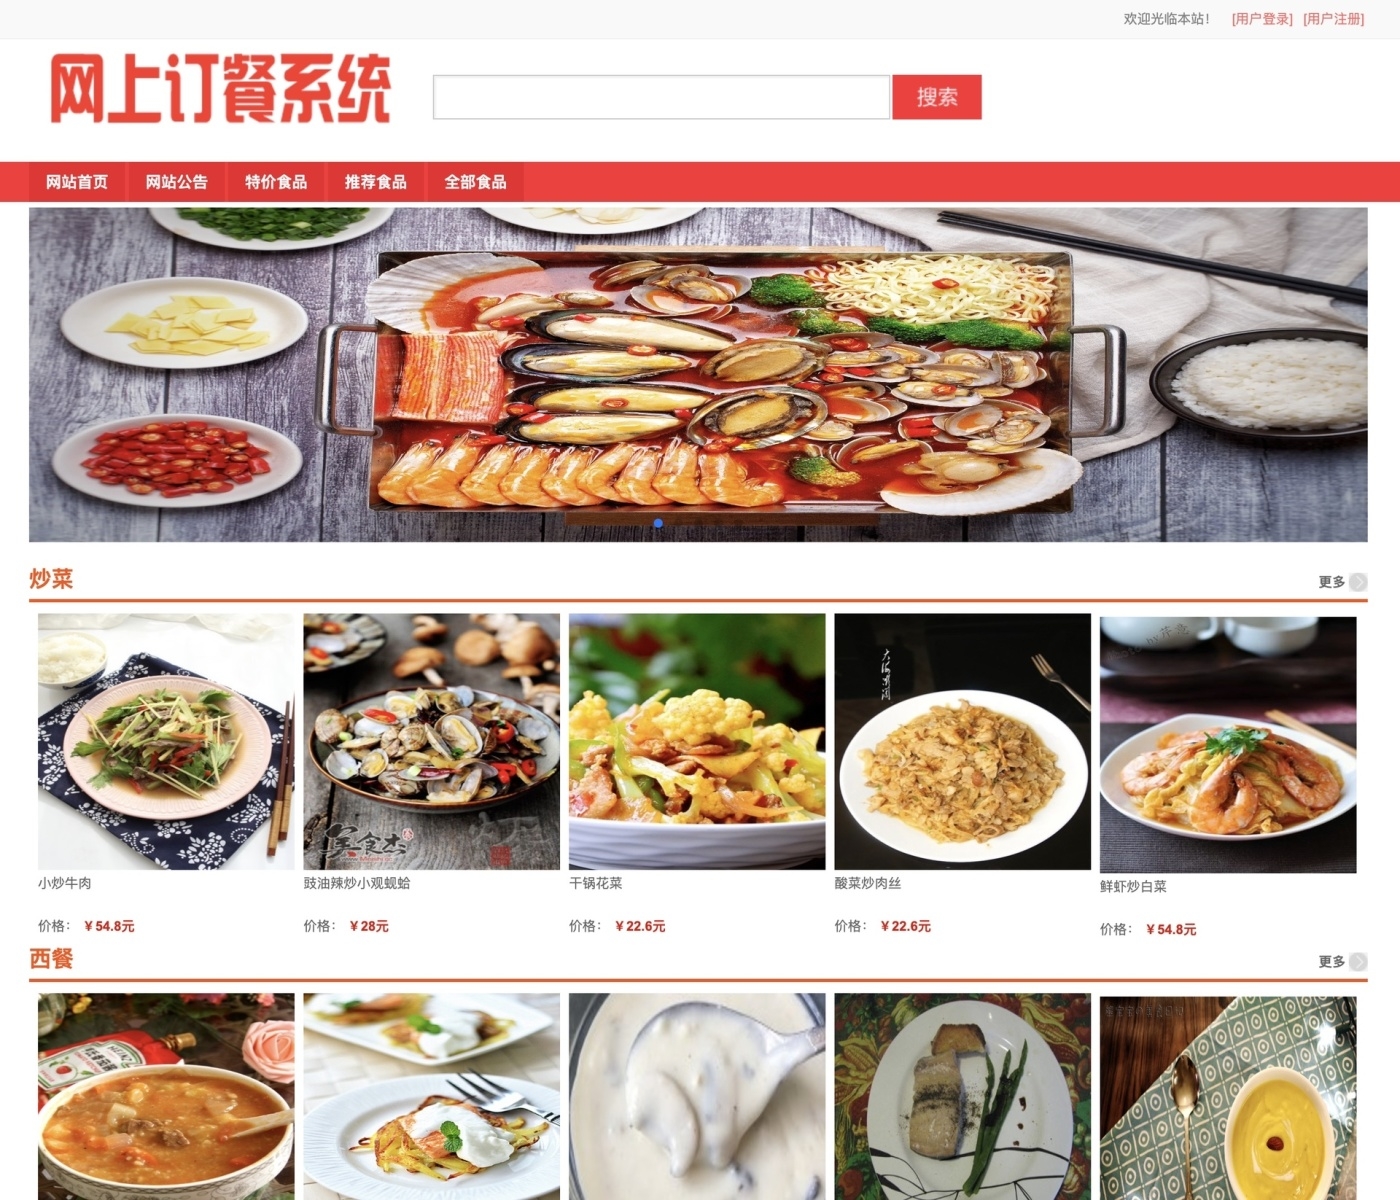 springboot 网上订餐系统 在线订餐系统 网上点餐系